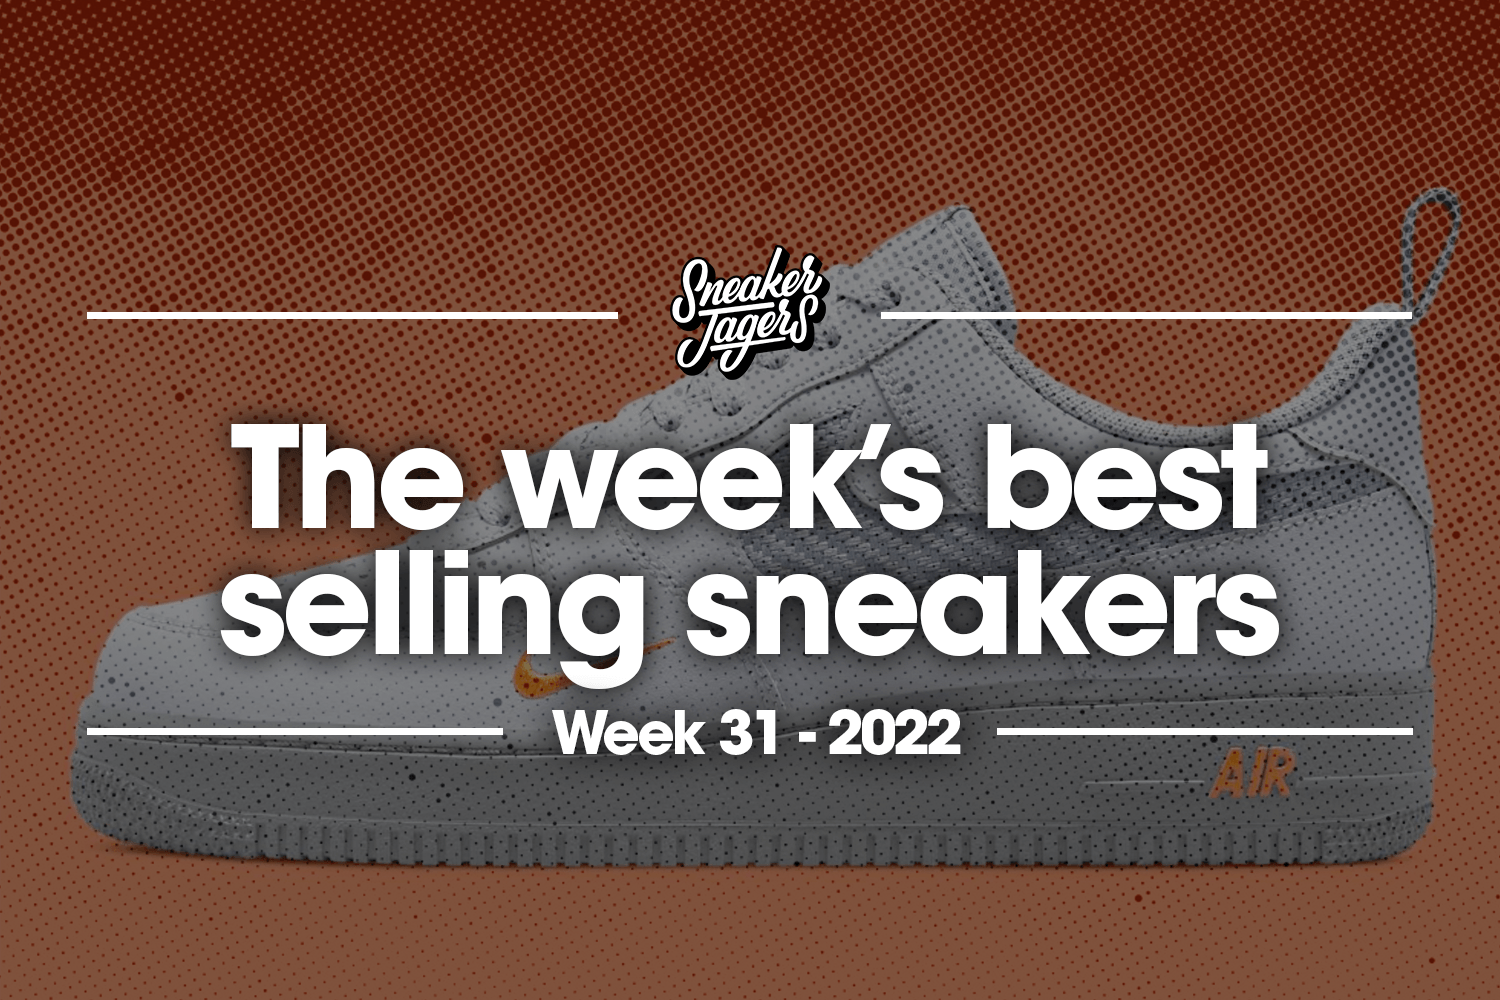 The 5 best-selling sneakers of week 31